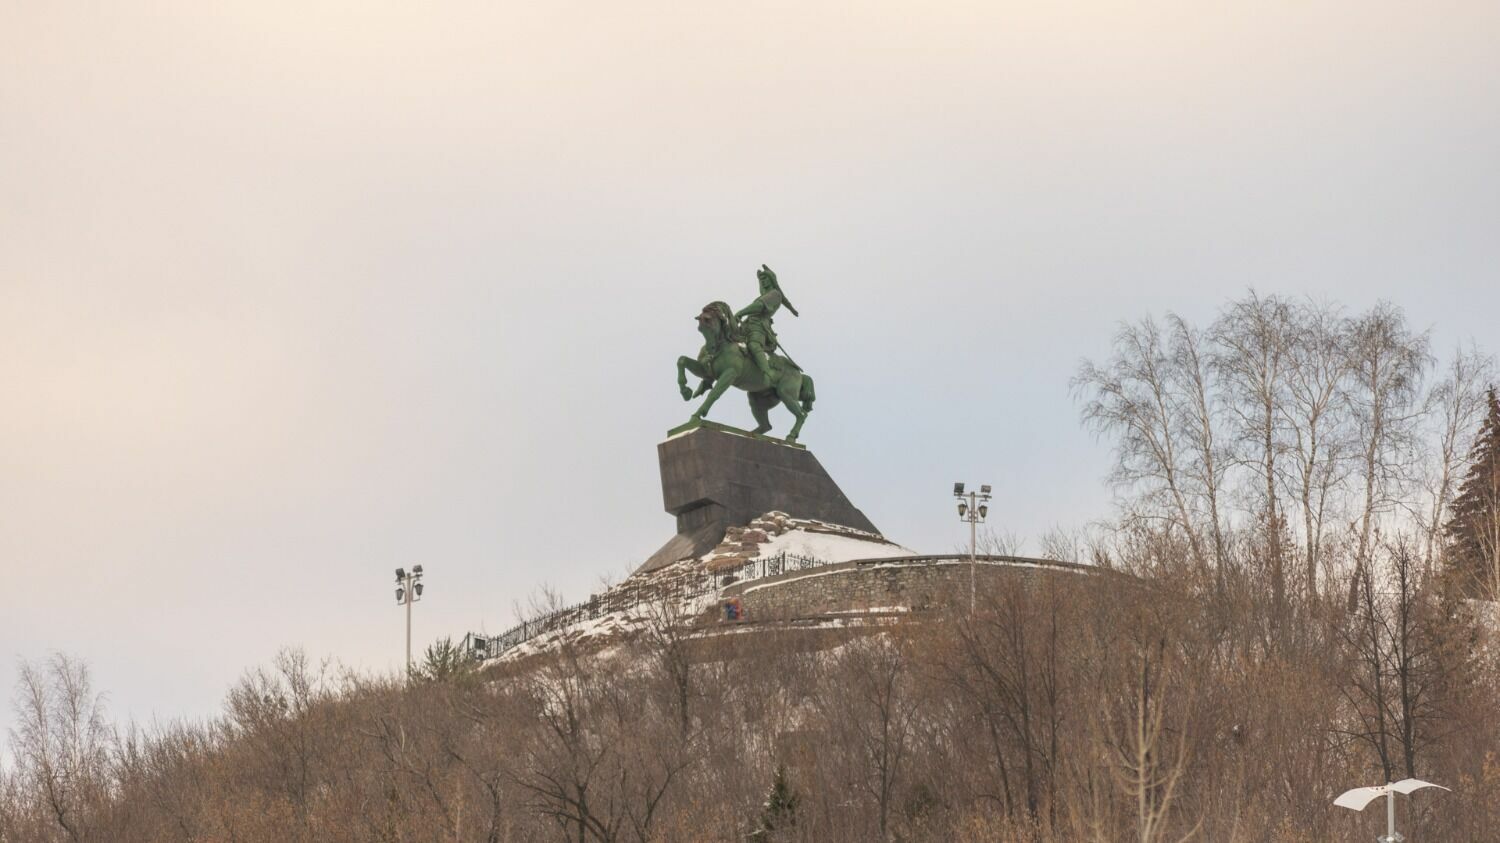 Символ Башкирии - памятник Салавату Юлаеву - обветшал и нуждается в реконструкции